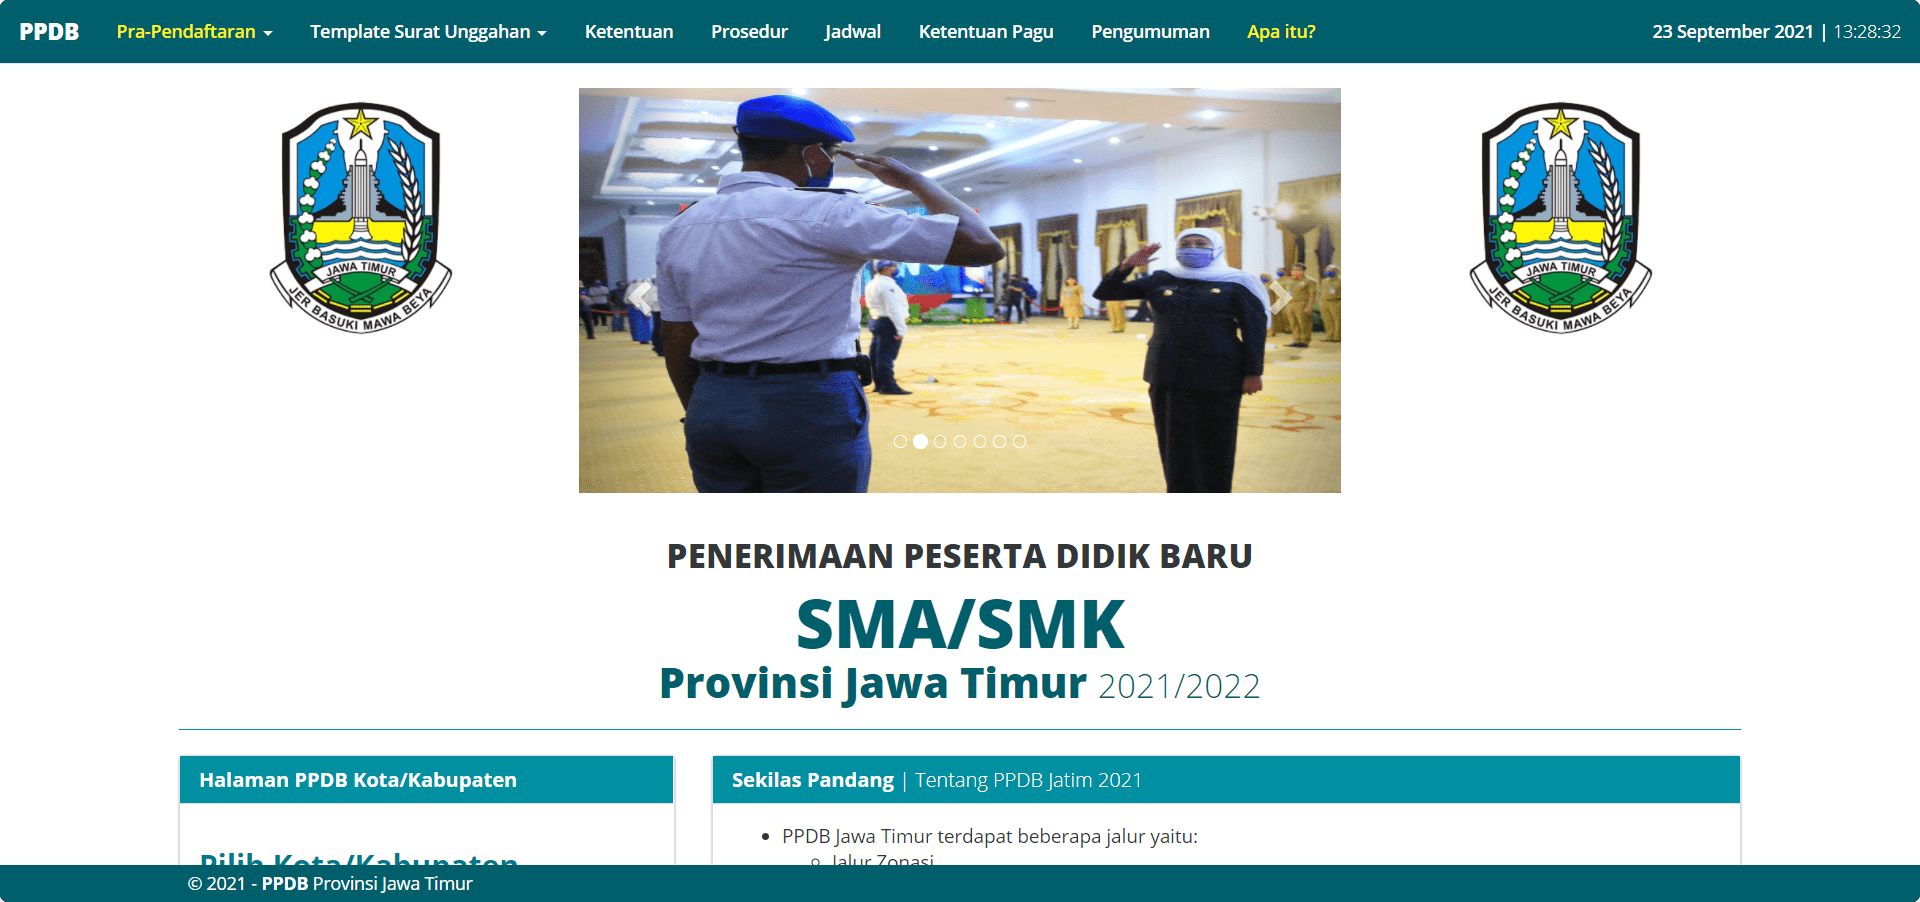 PPDB Jawa Timur 2021